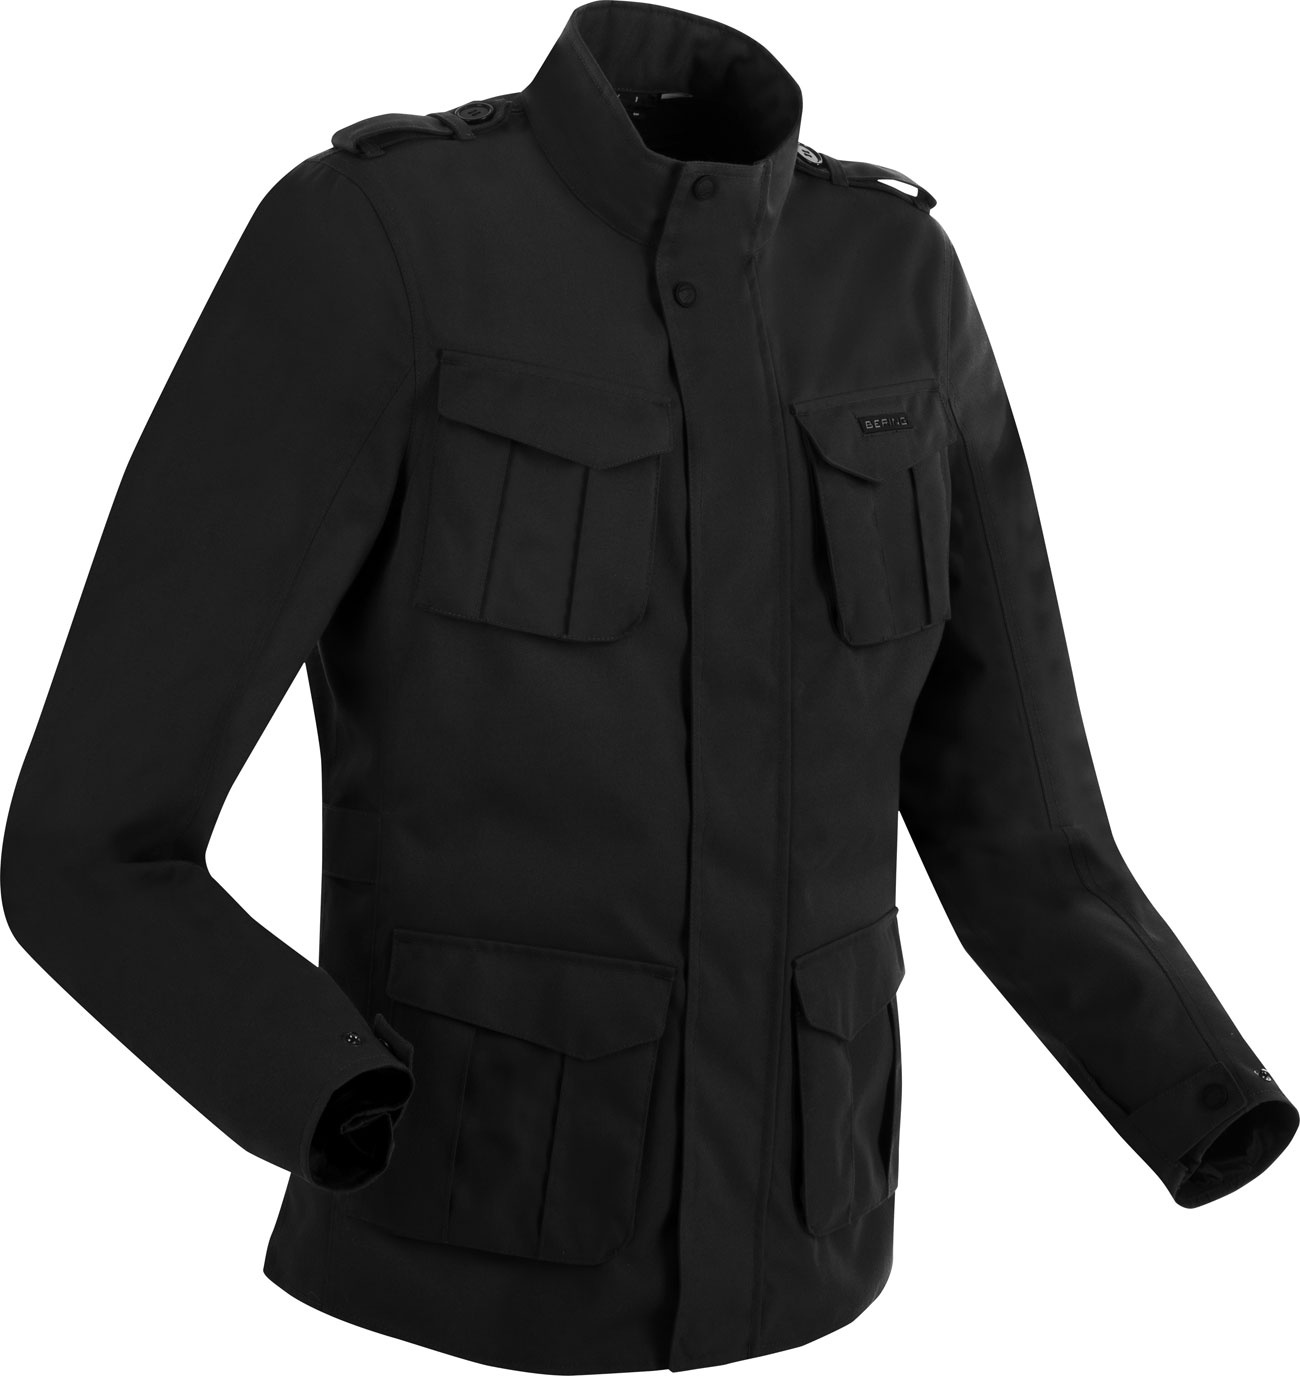 Bering Norris Evo, veste textile imperméable - Noir - M